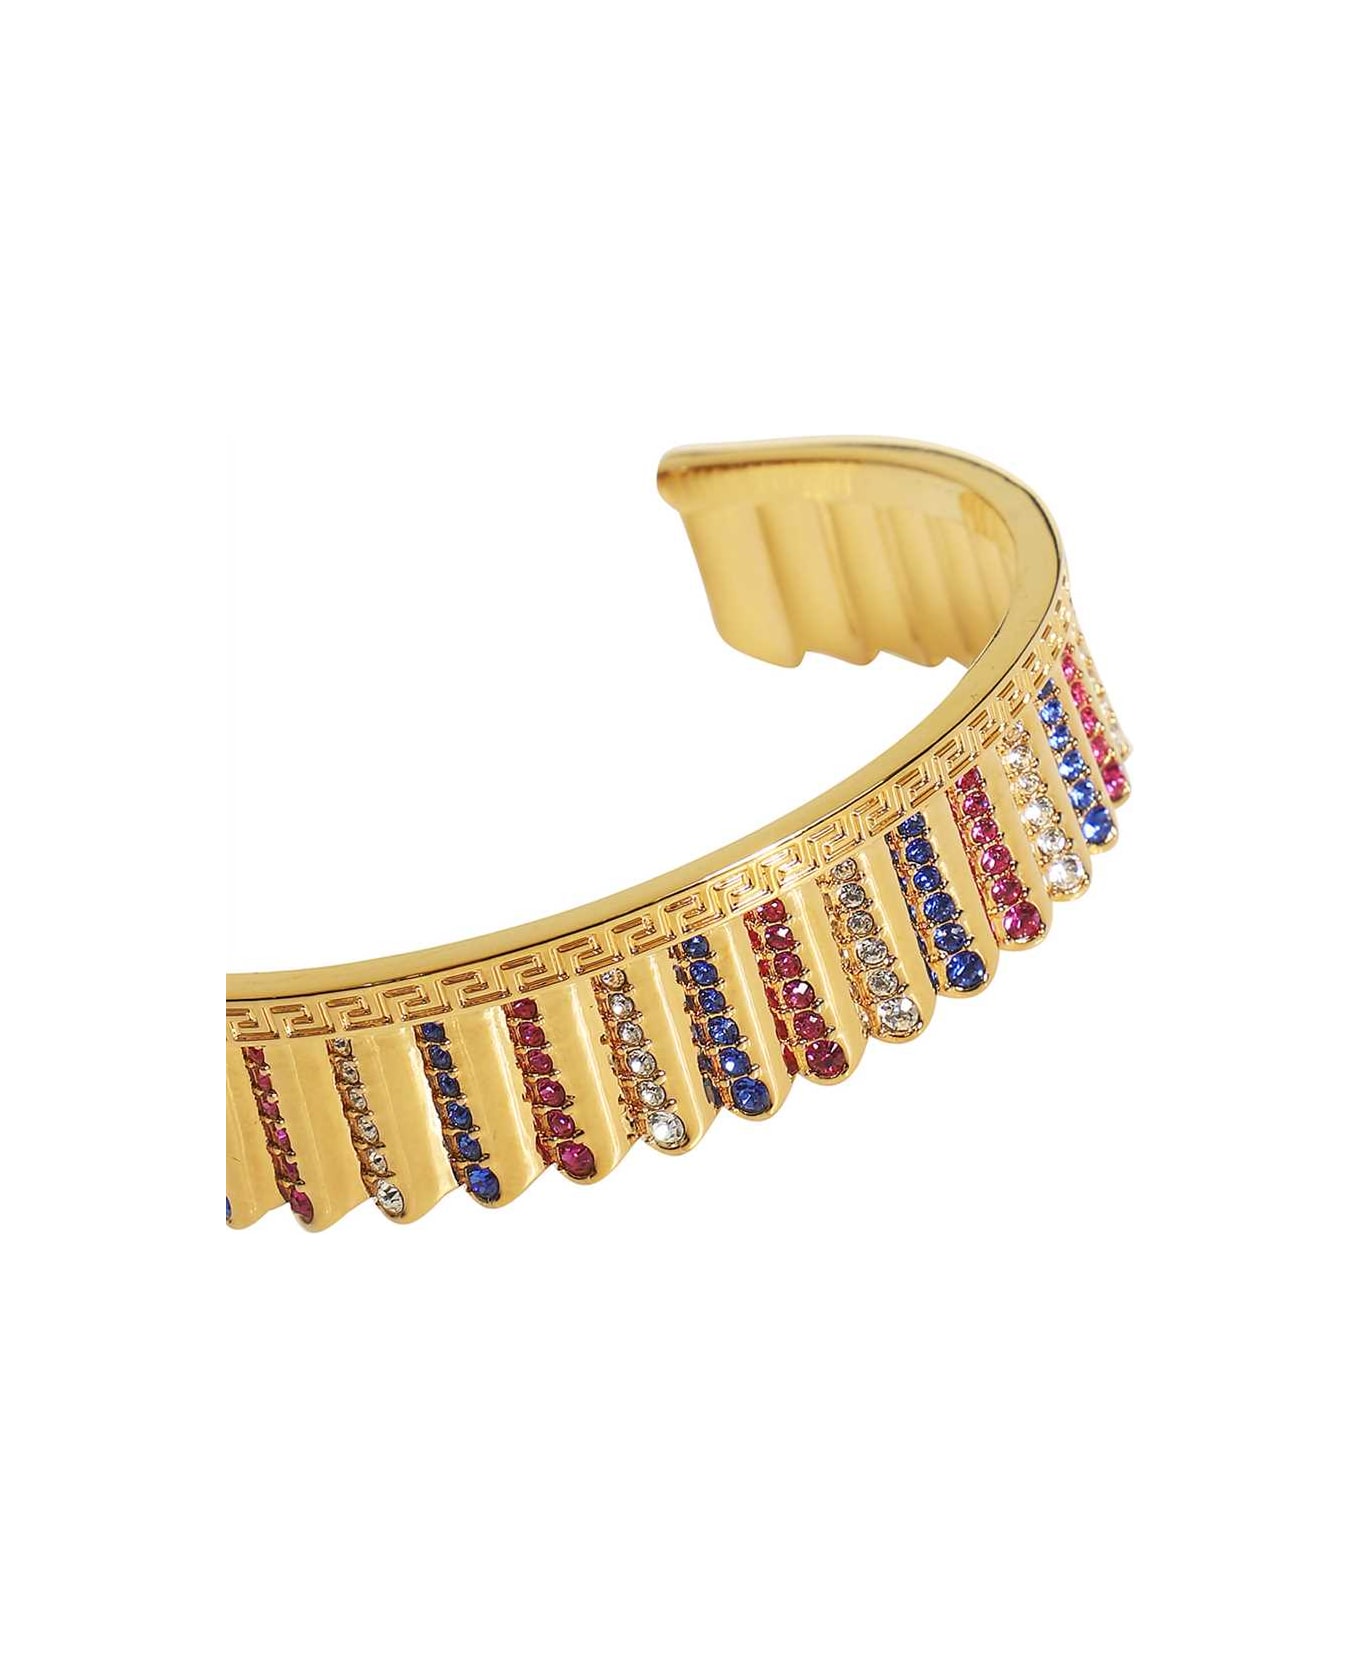 Versace Embellished Gold-tone Metal Bracelet - Gold